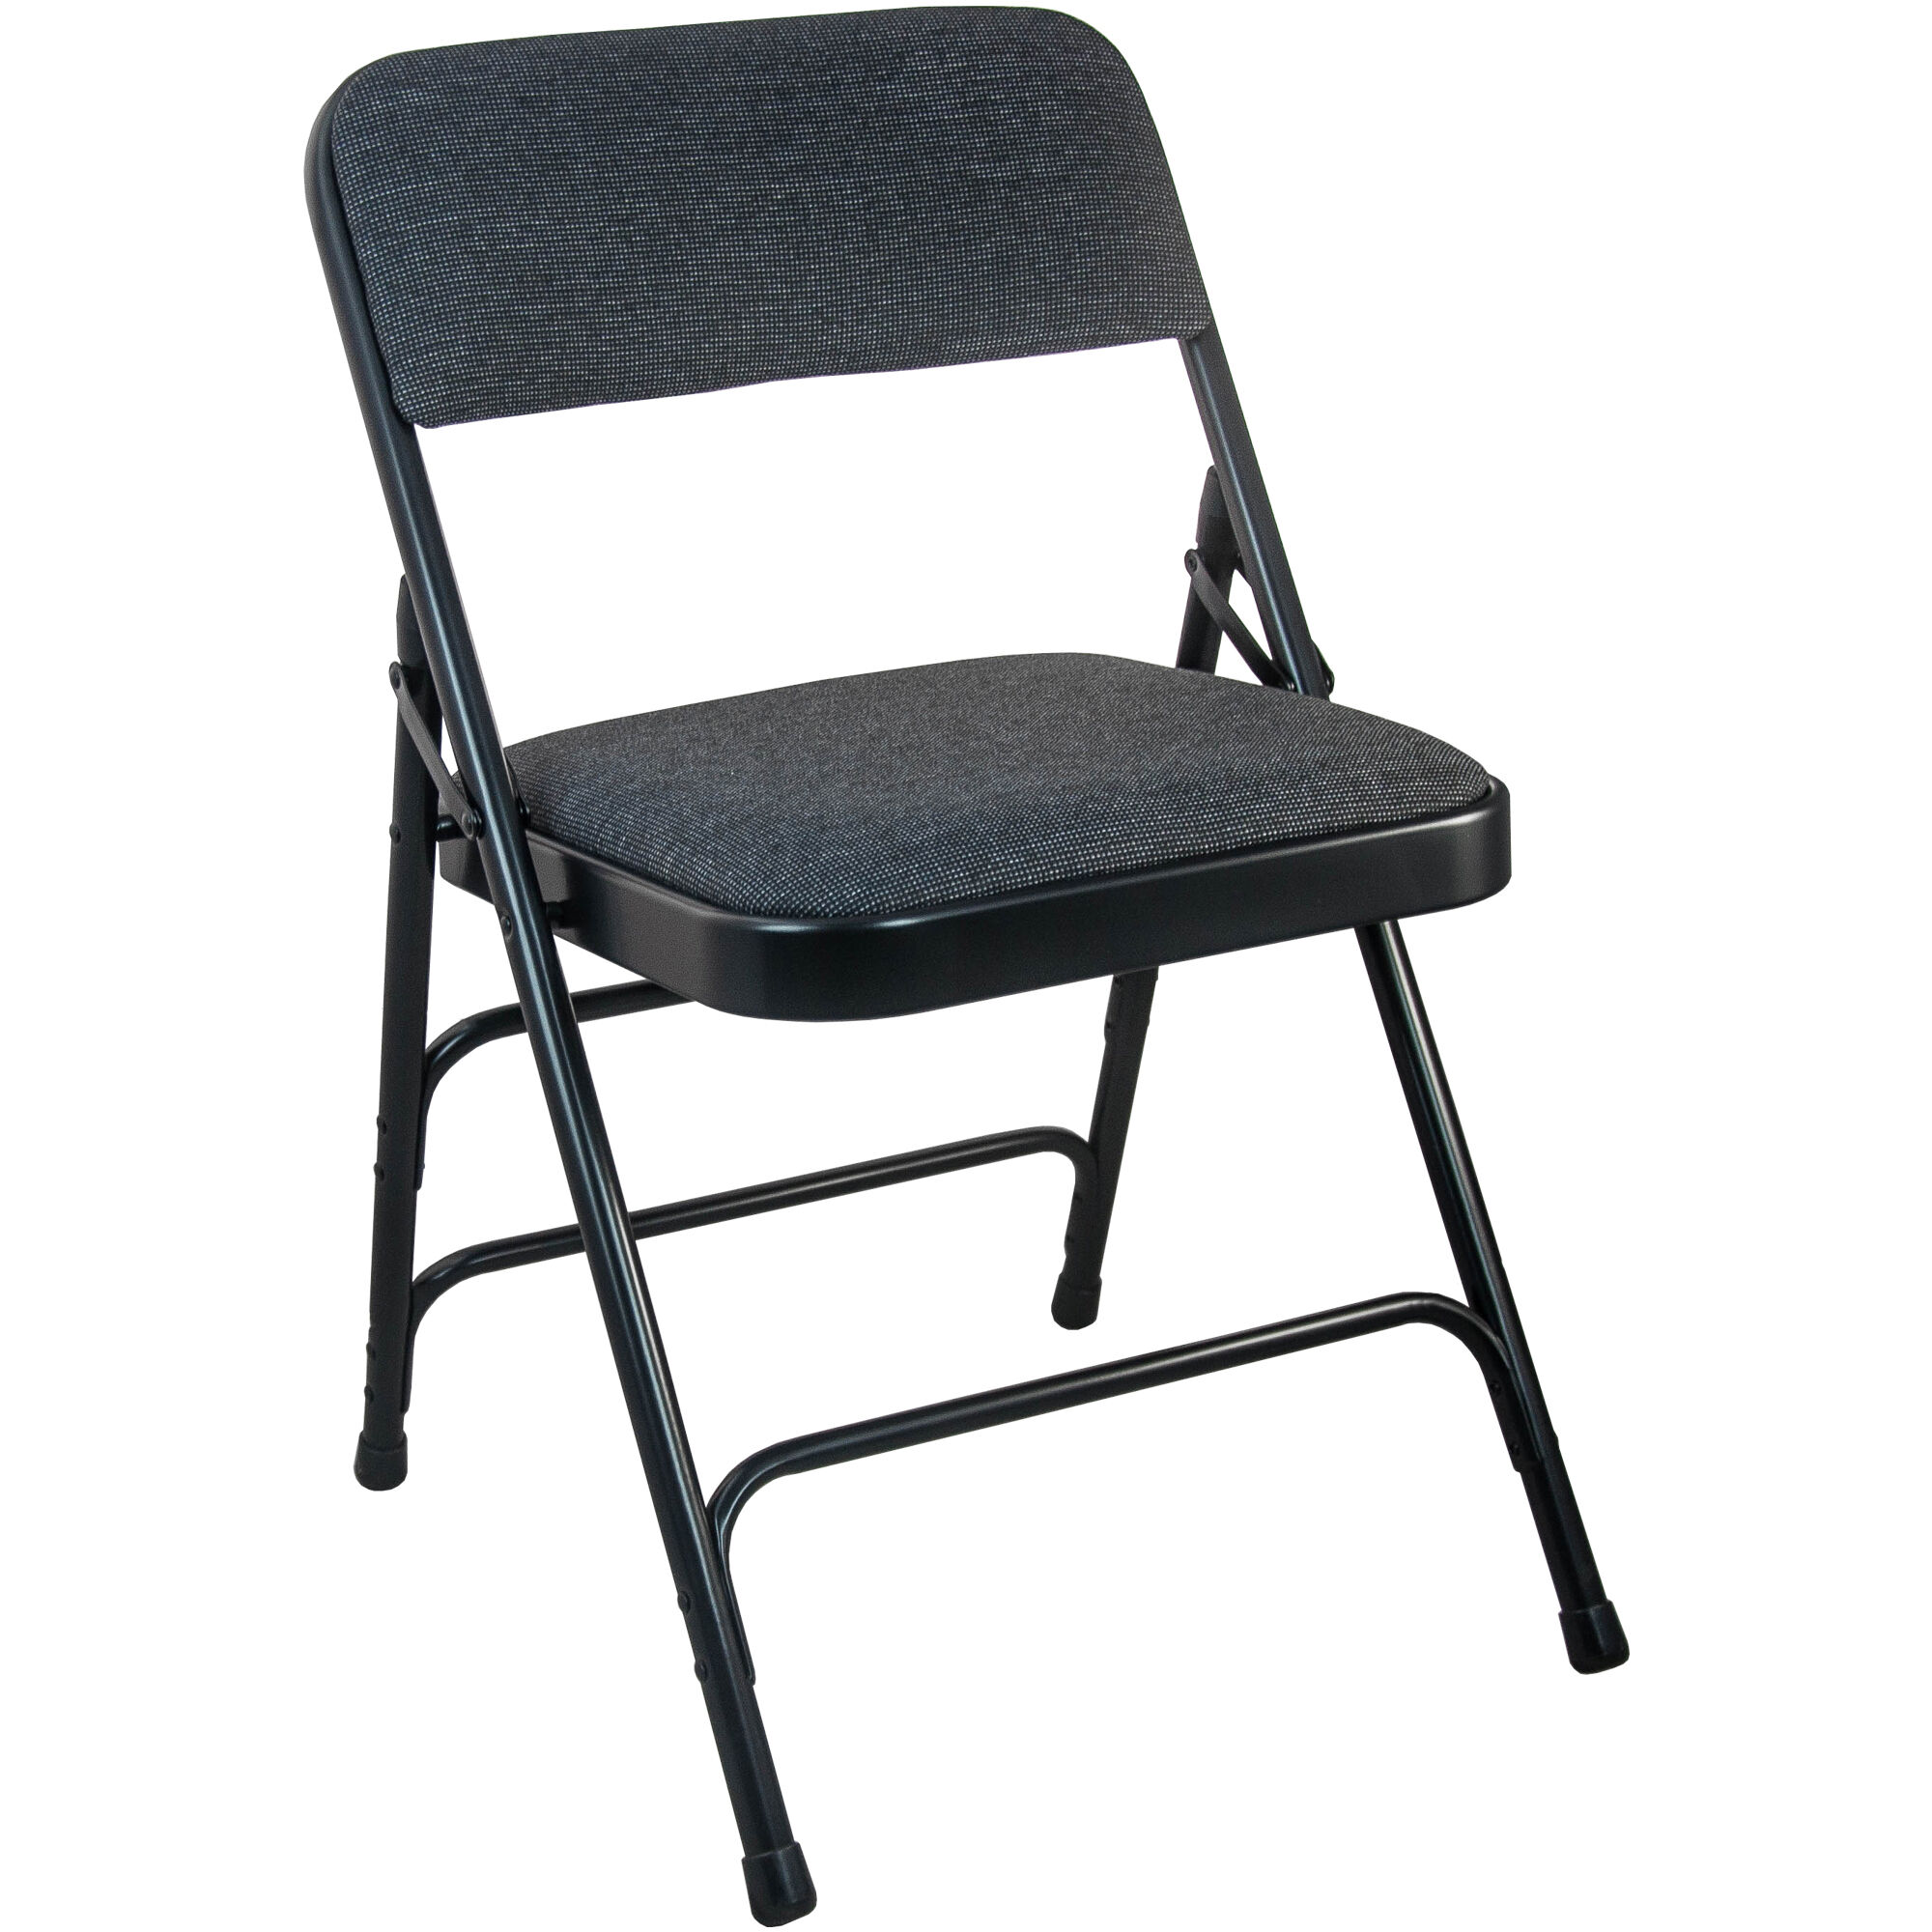 Black Metal Padded Chair